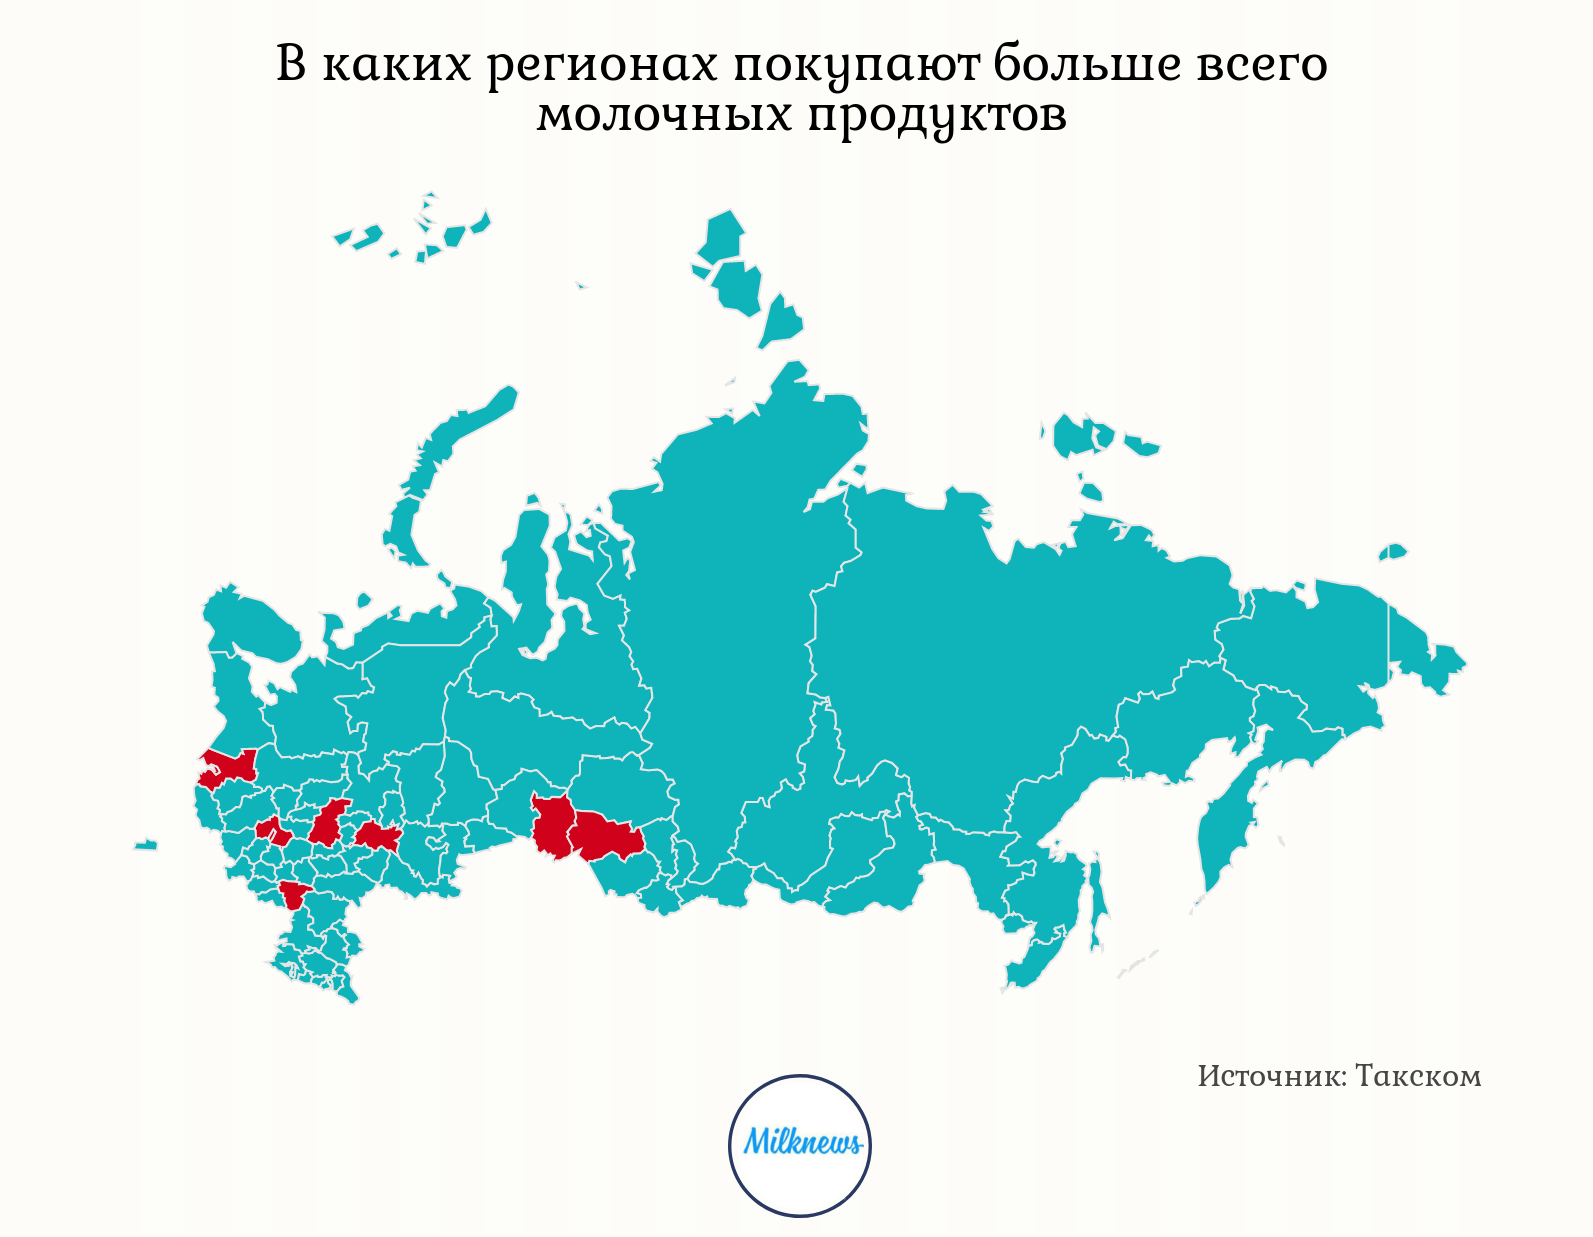 В е в каких регионах. Какой регион. Какой регион России. В каких регионах больше всего покупают. Домашние регионы России.